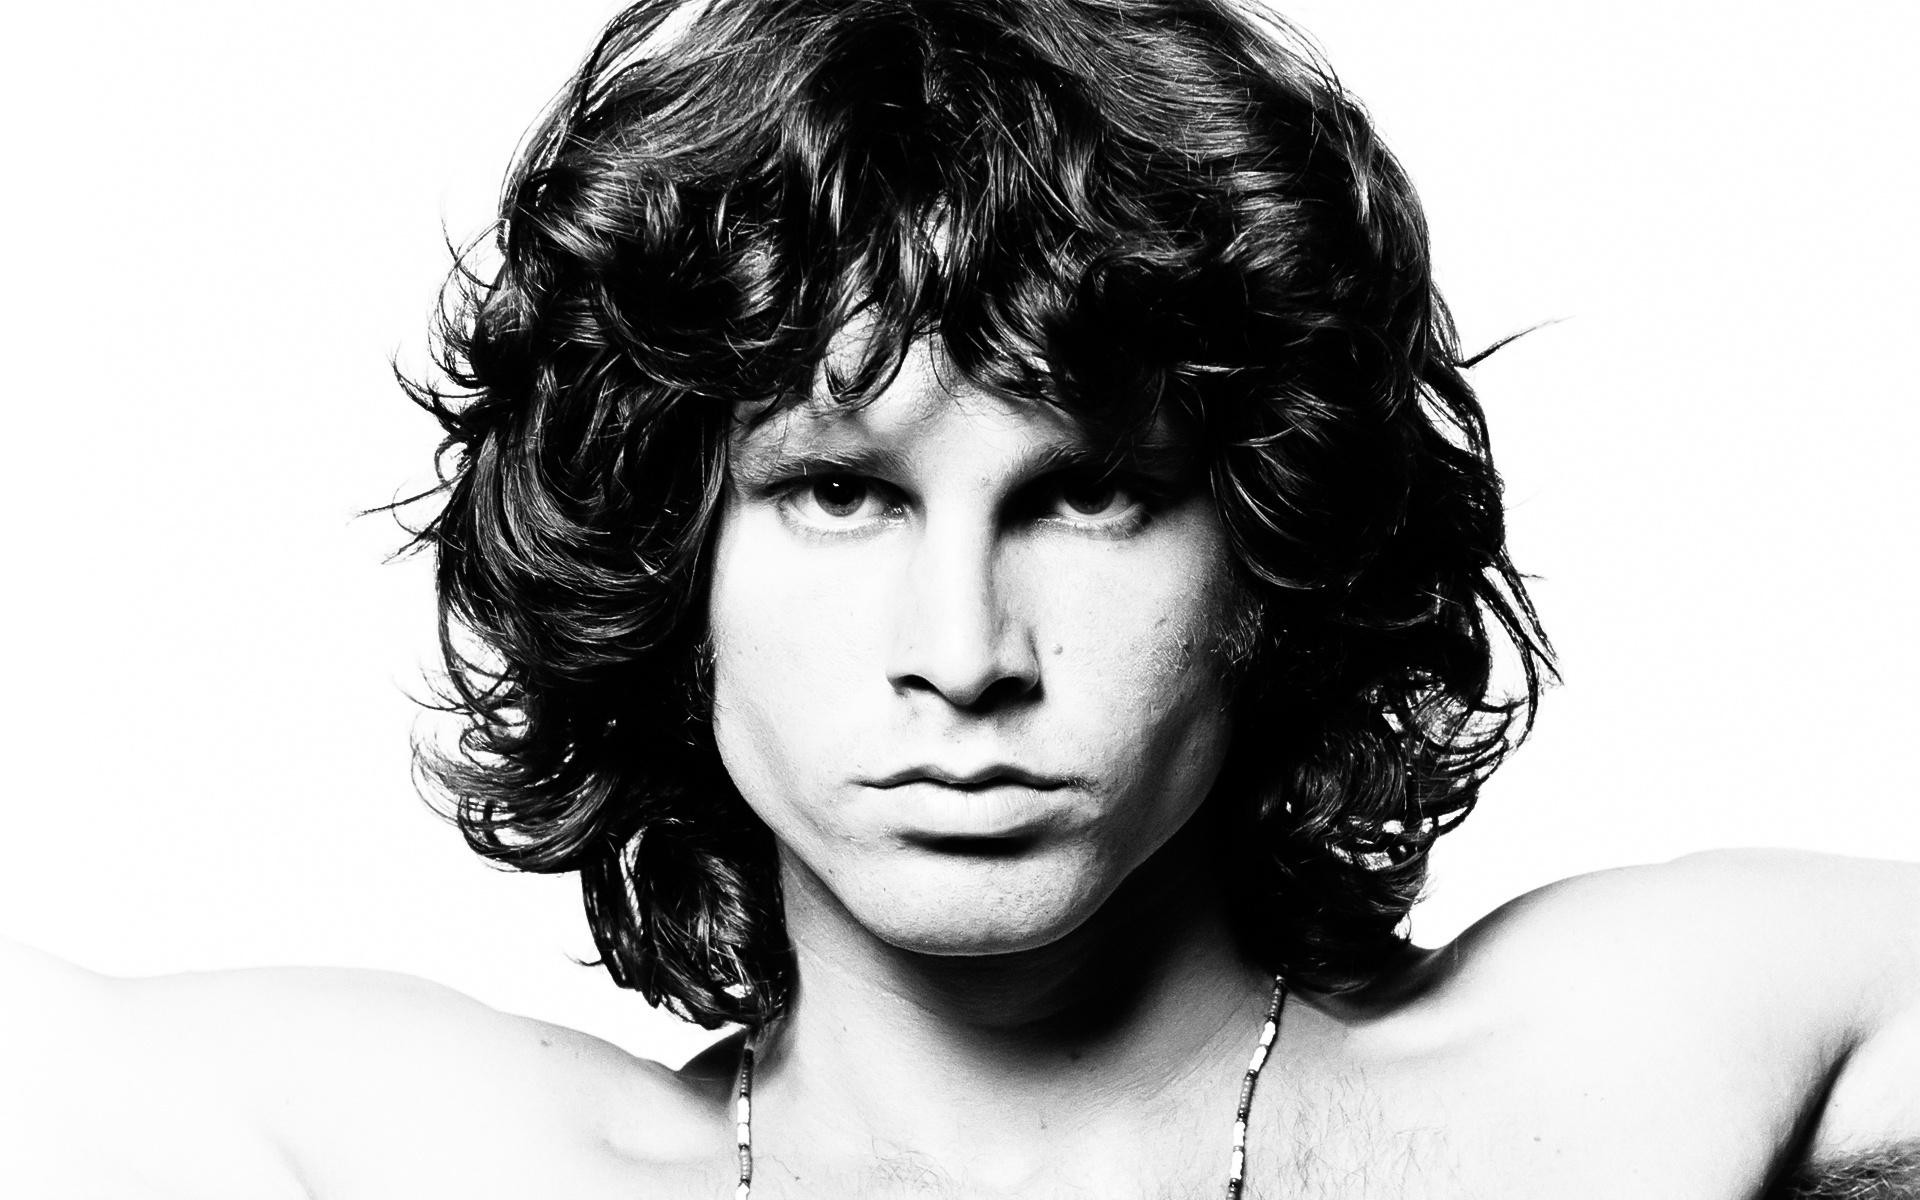 Melhores papéis de parede de Jim Morrison para tela do telefone